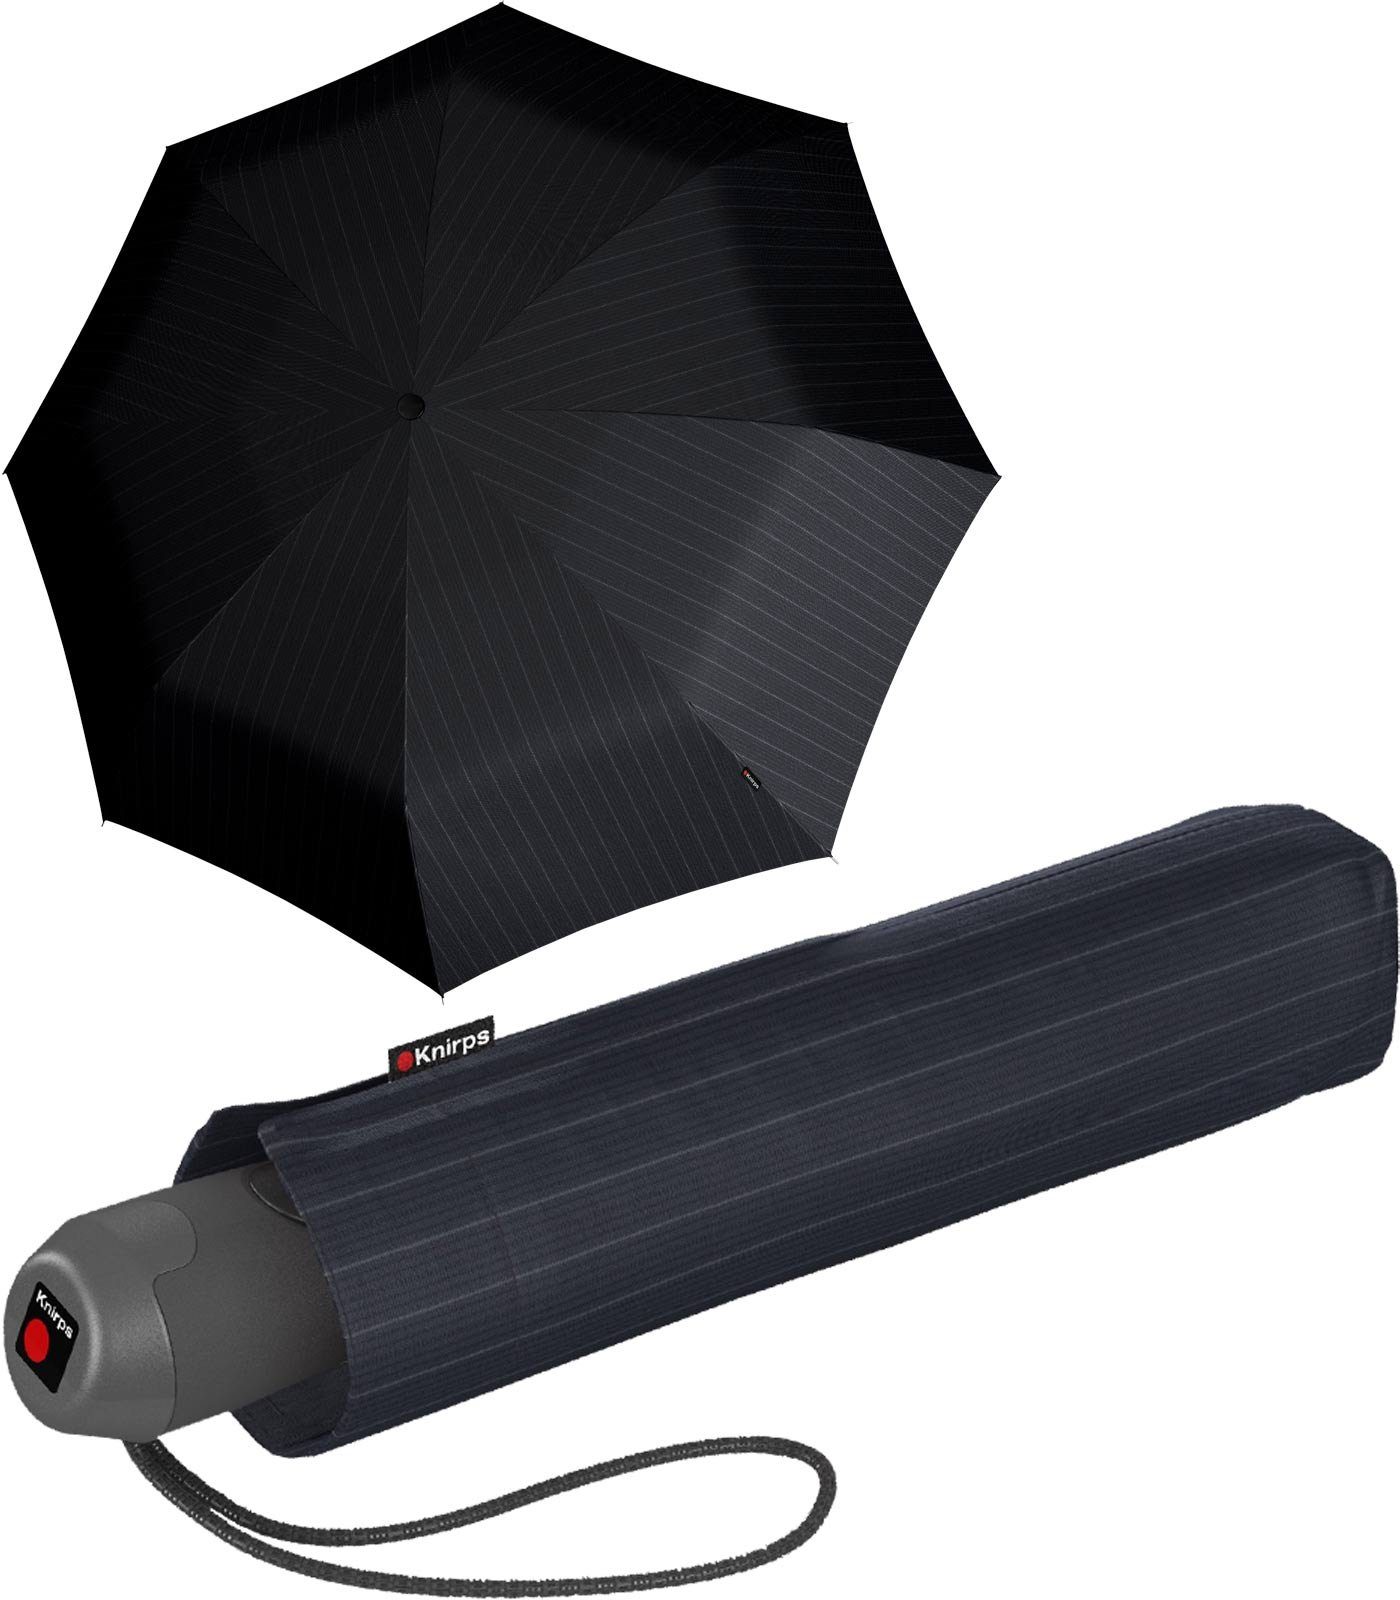 Knirps® Taschenregenschirm stabiler, leichter Schirm mit Auf-Zu-Automatik, besonders edel mit Geschenkverpackung